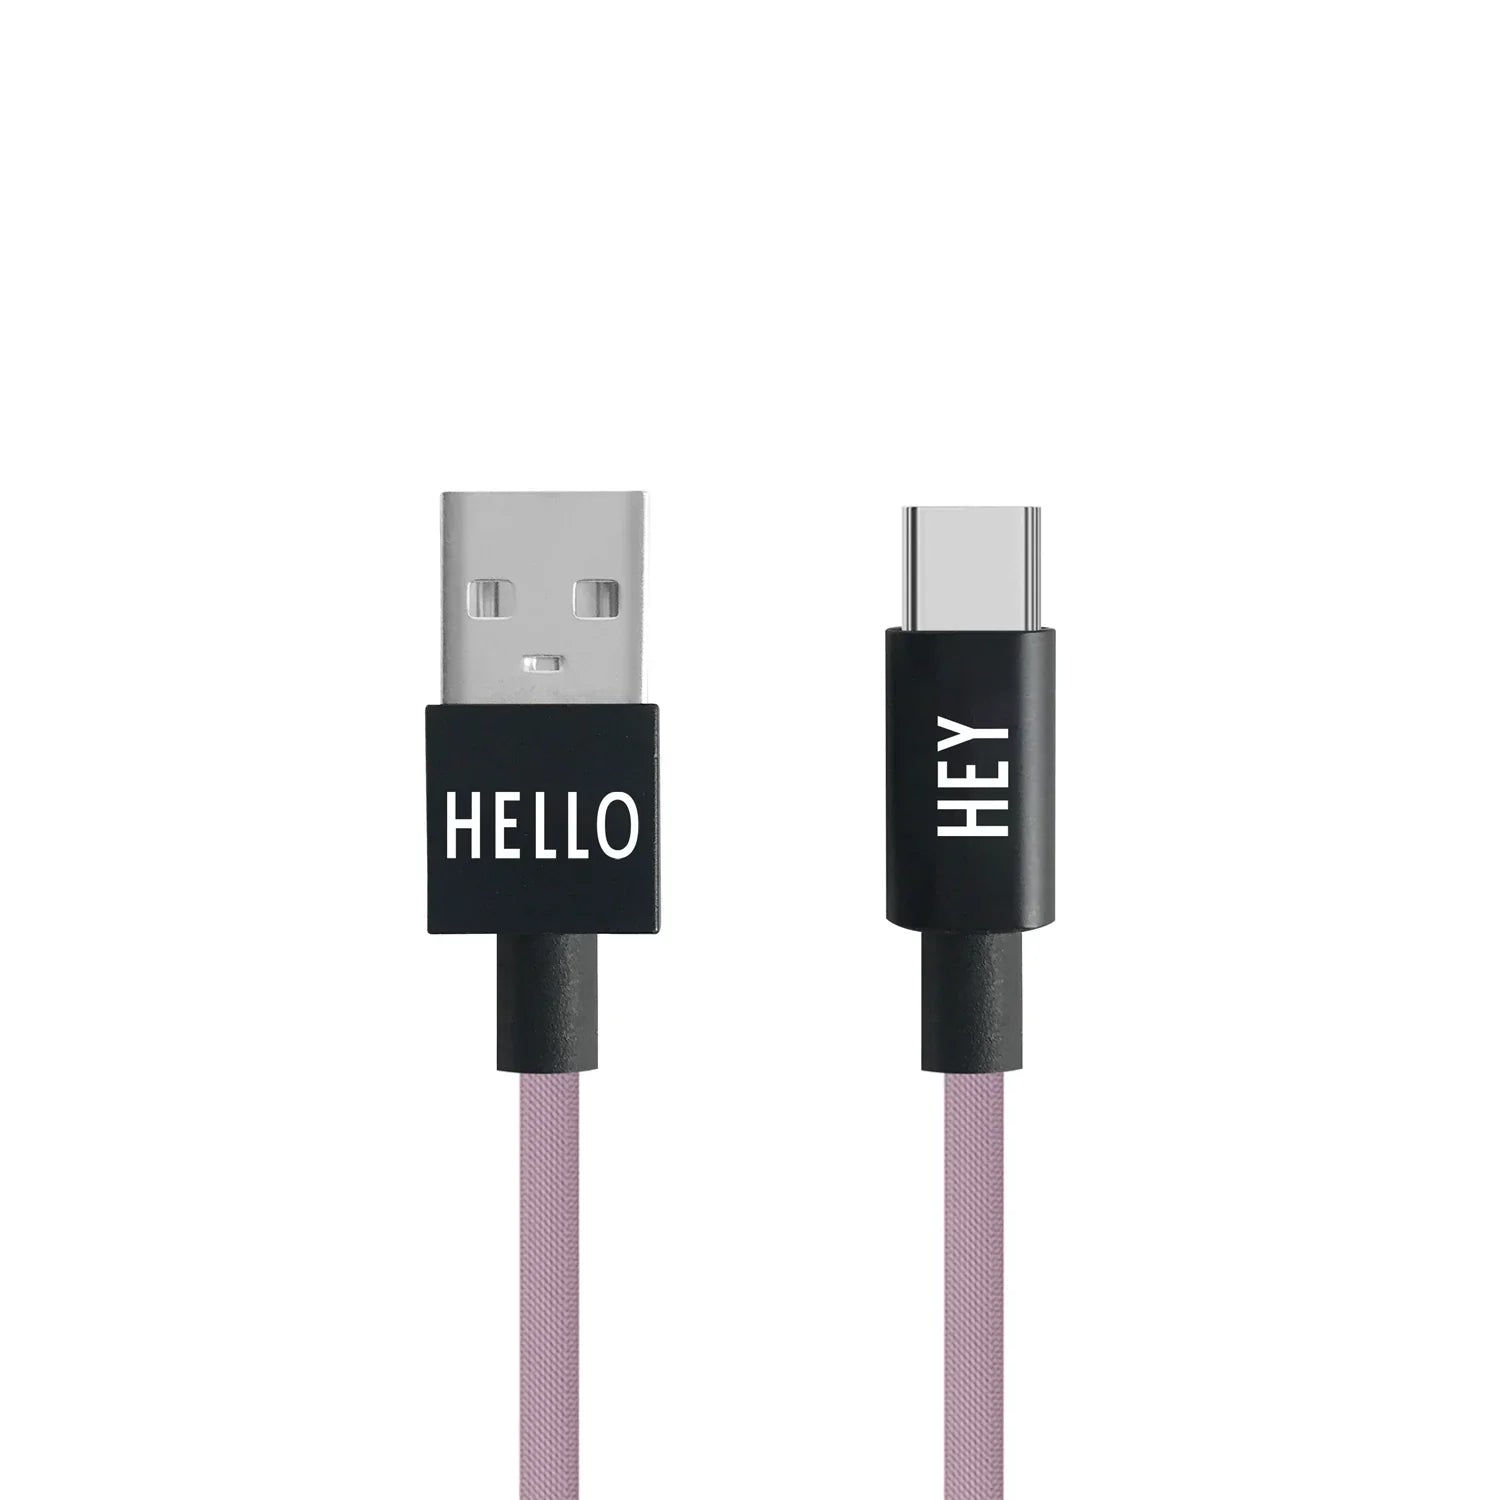 Design bogstaver mit kabel USB C kabel 1m, lavendel